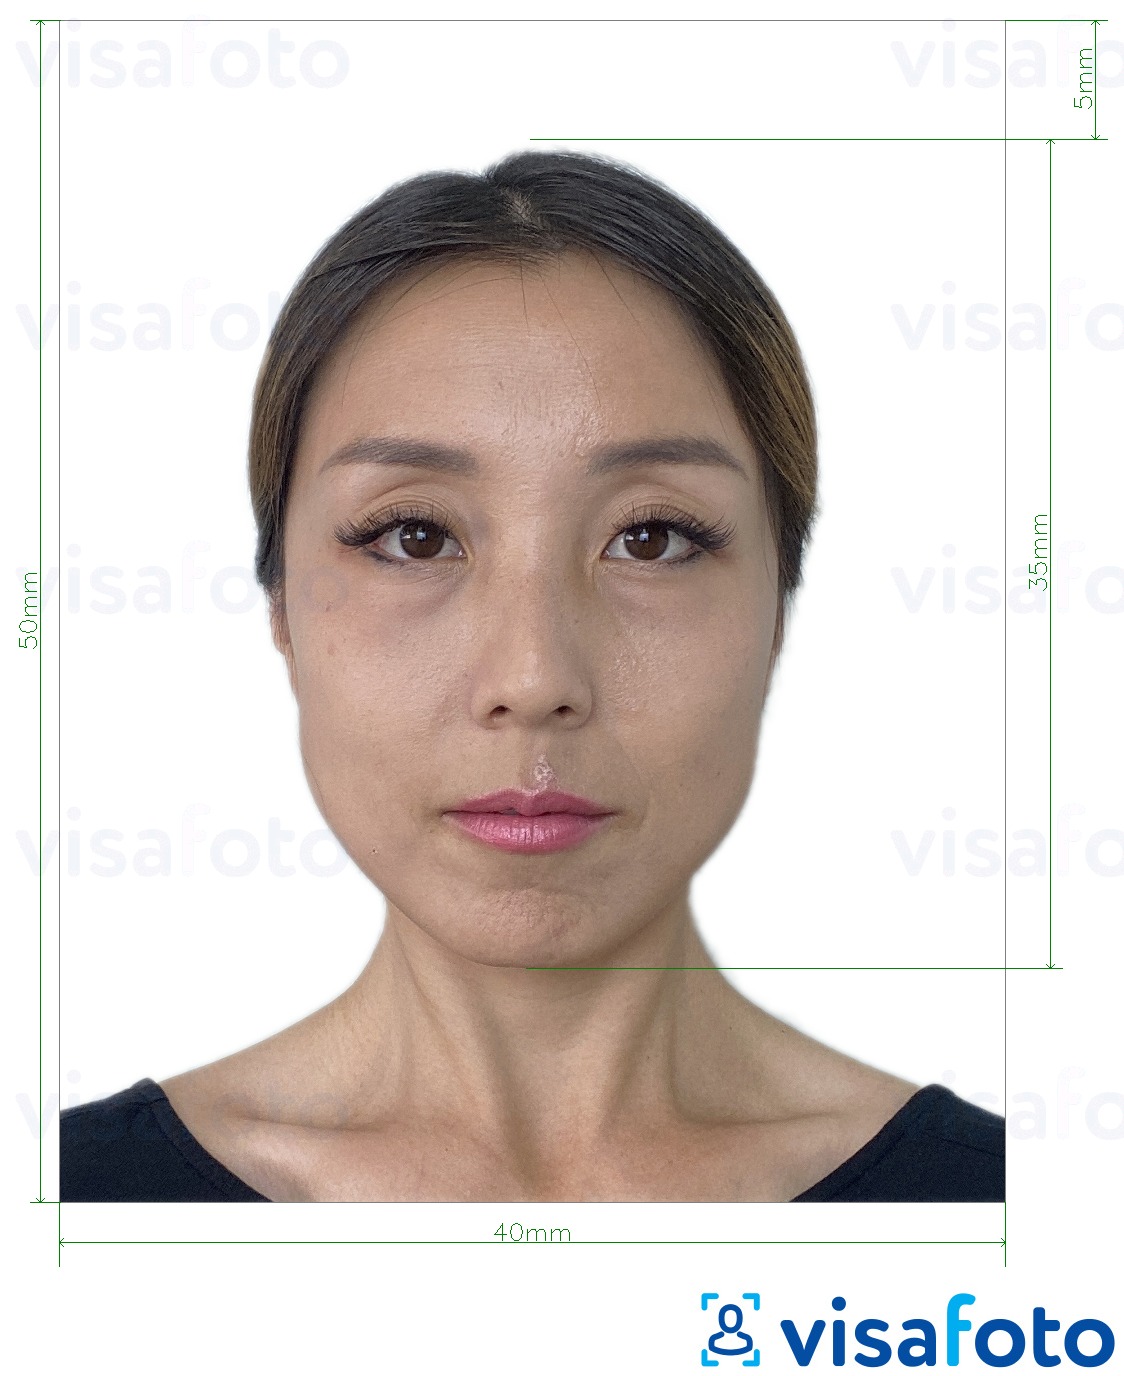 Ví dụ cho ảnh với Visa Hồng Kông 40x50 mm (4x5 cm) cùng kích cỡ xác định chính xác.